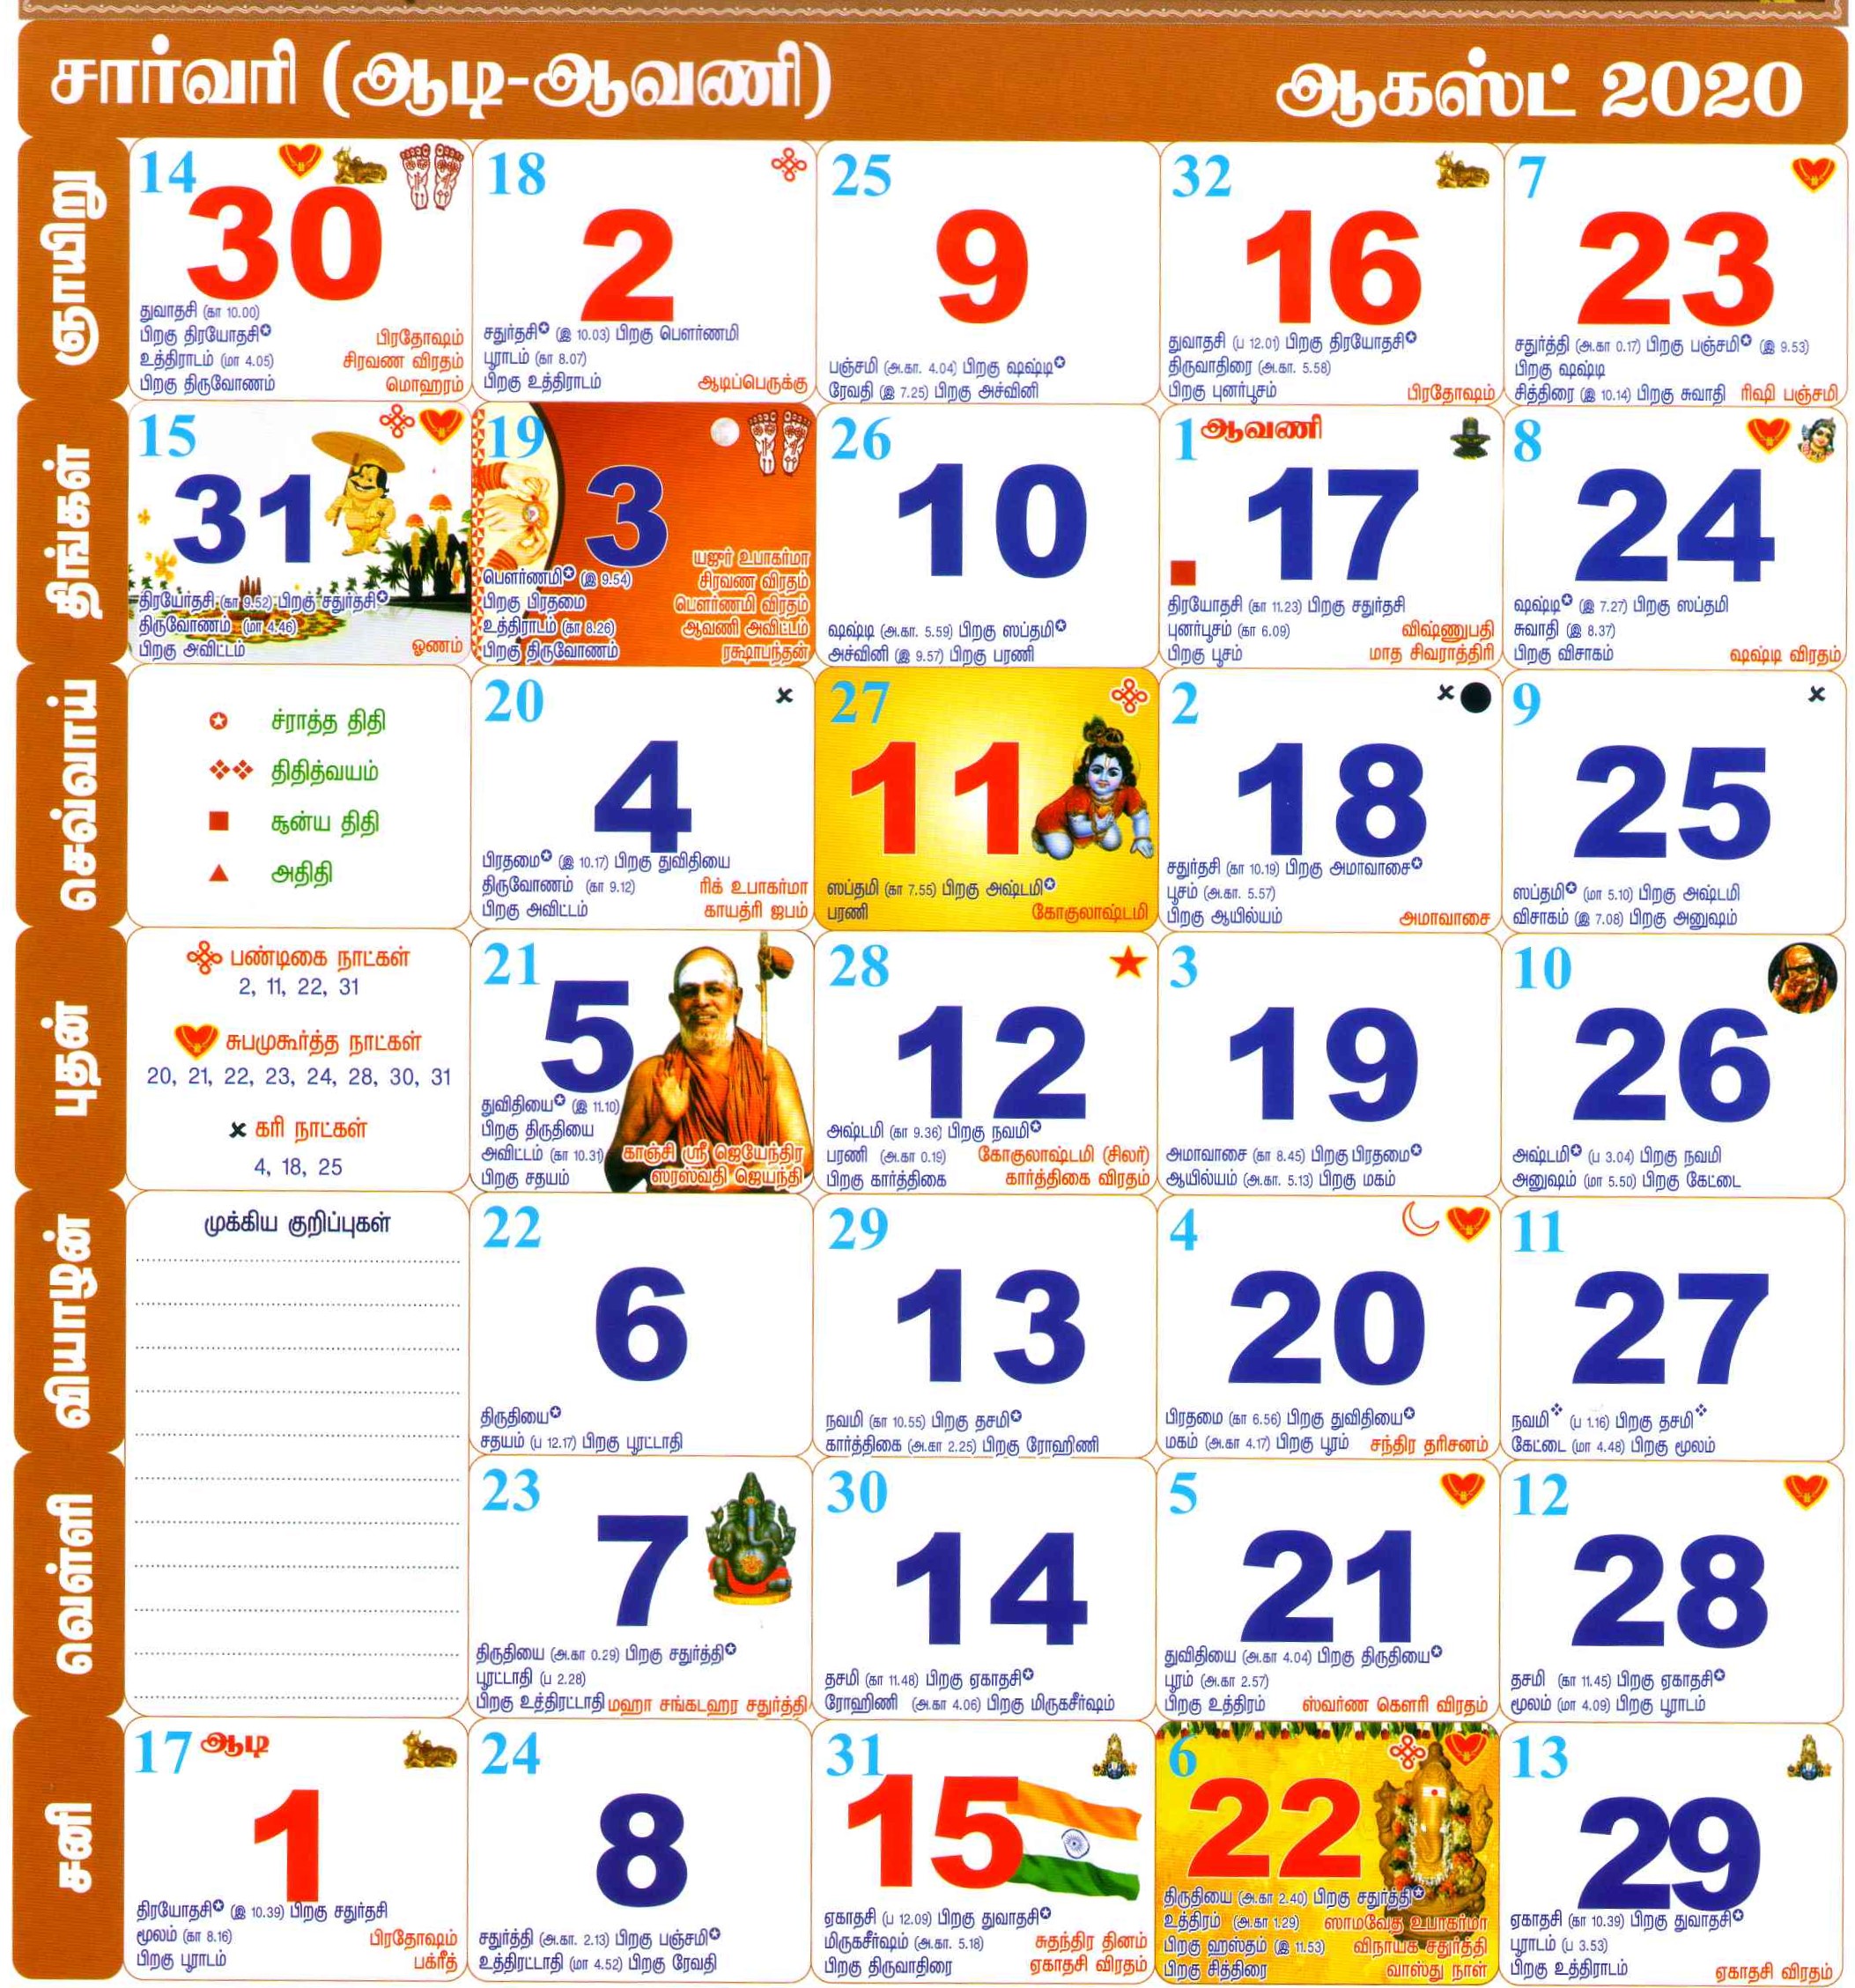 ஆகஸ்ட் 2020 தமிழ் மாதம் காலண்டர்